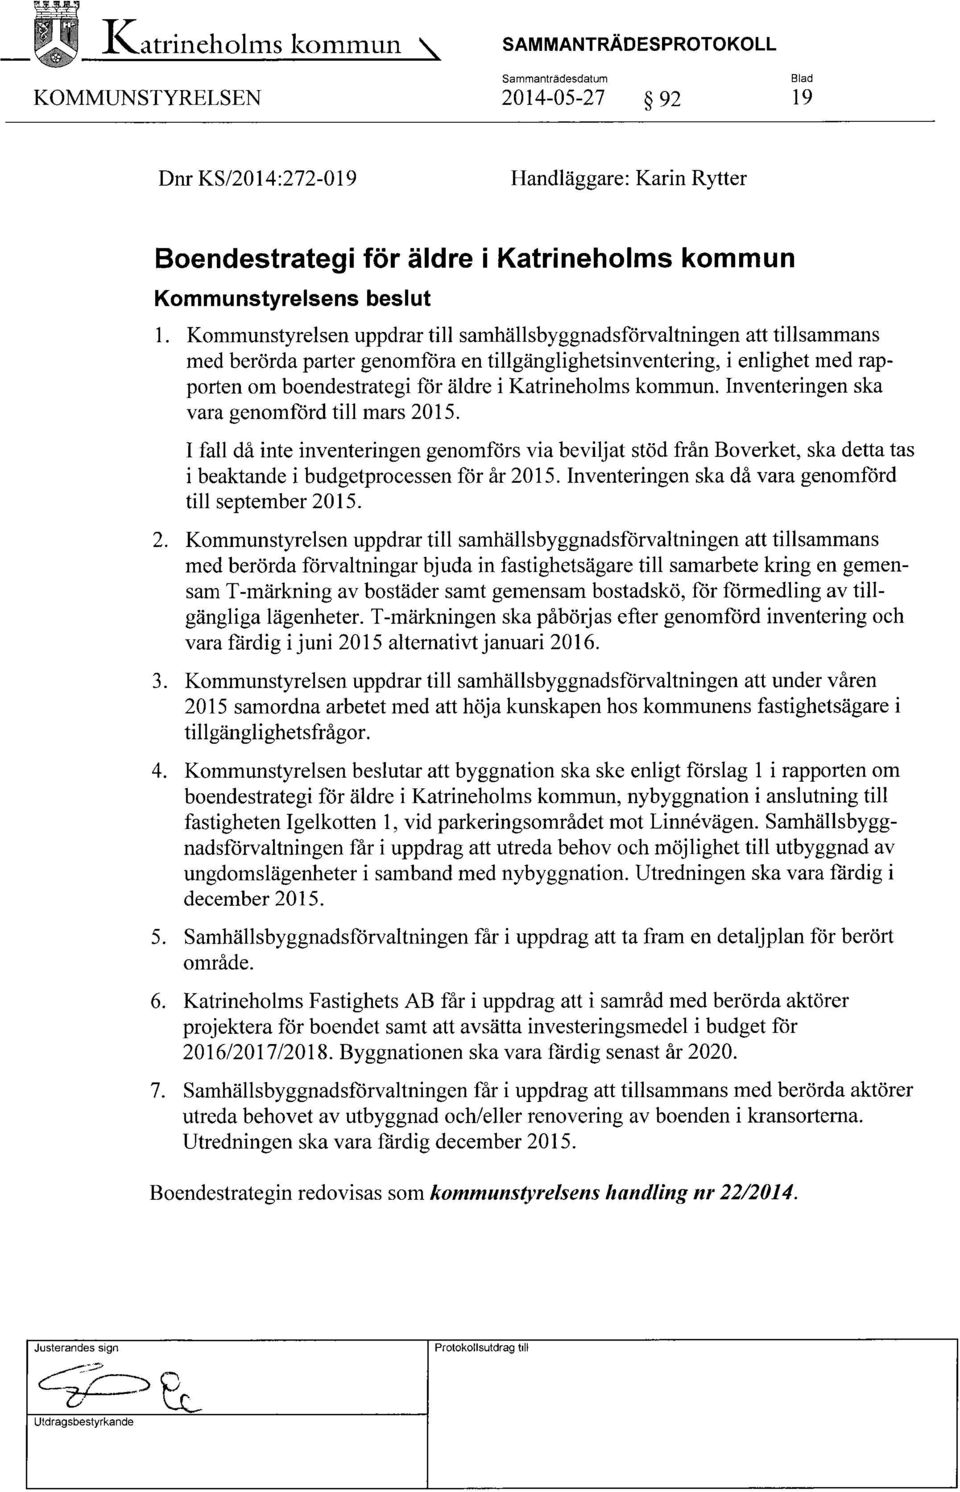 Katrineholms kommun. Inventeringen ska vara genomförd till mars 2015. Ifall då inte inventeringen genomförs via beviljat stöd från Boverket, ska detta tas i beaktande i budgetprocessen för år 2015.